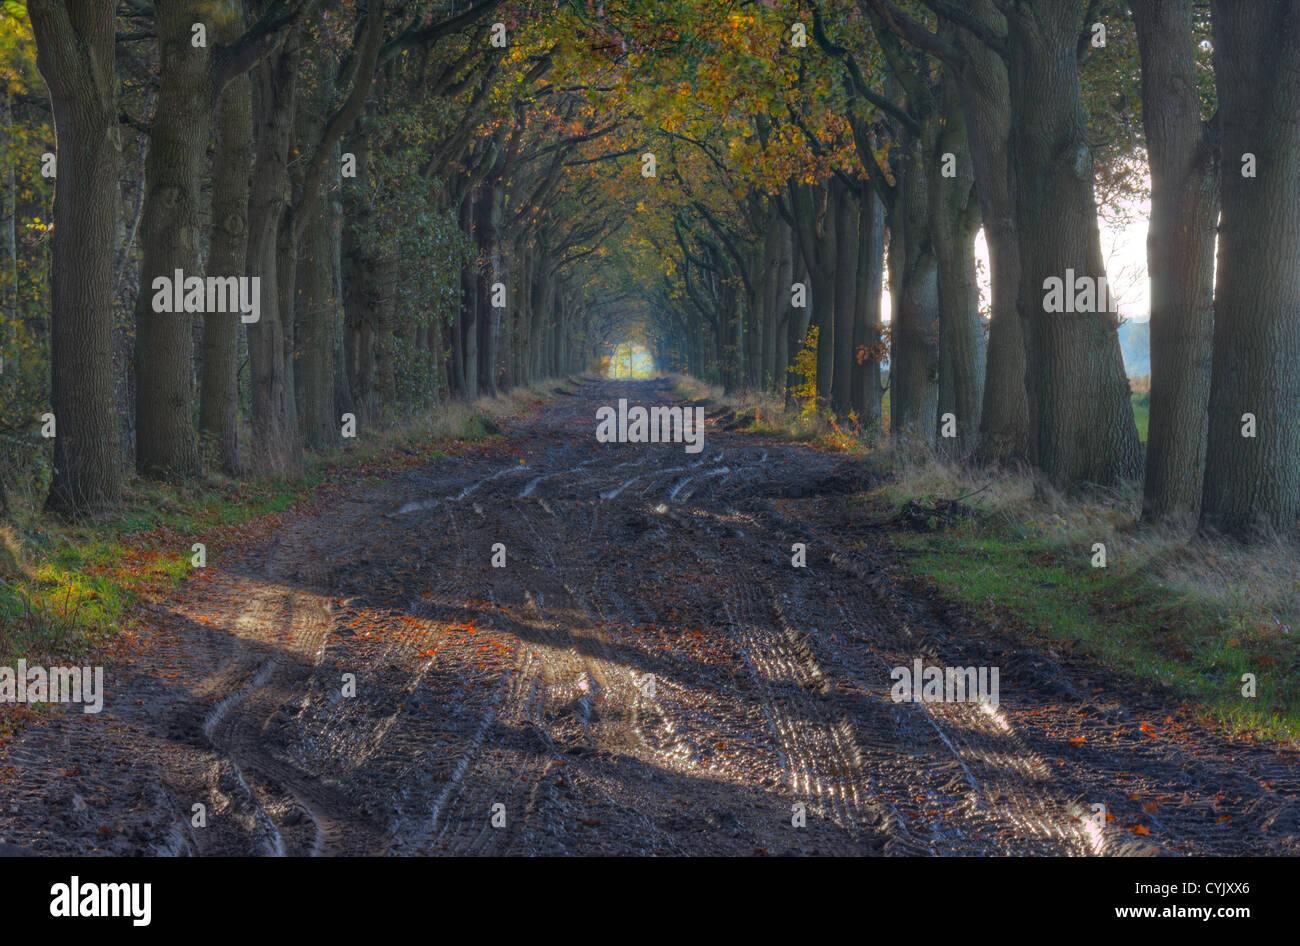 Un paese fangoso road con tracce di auto in autunno, rosso settentrionale leccio (Quercus rubra) nei colori dell'autunno. Foto Stock